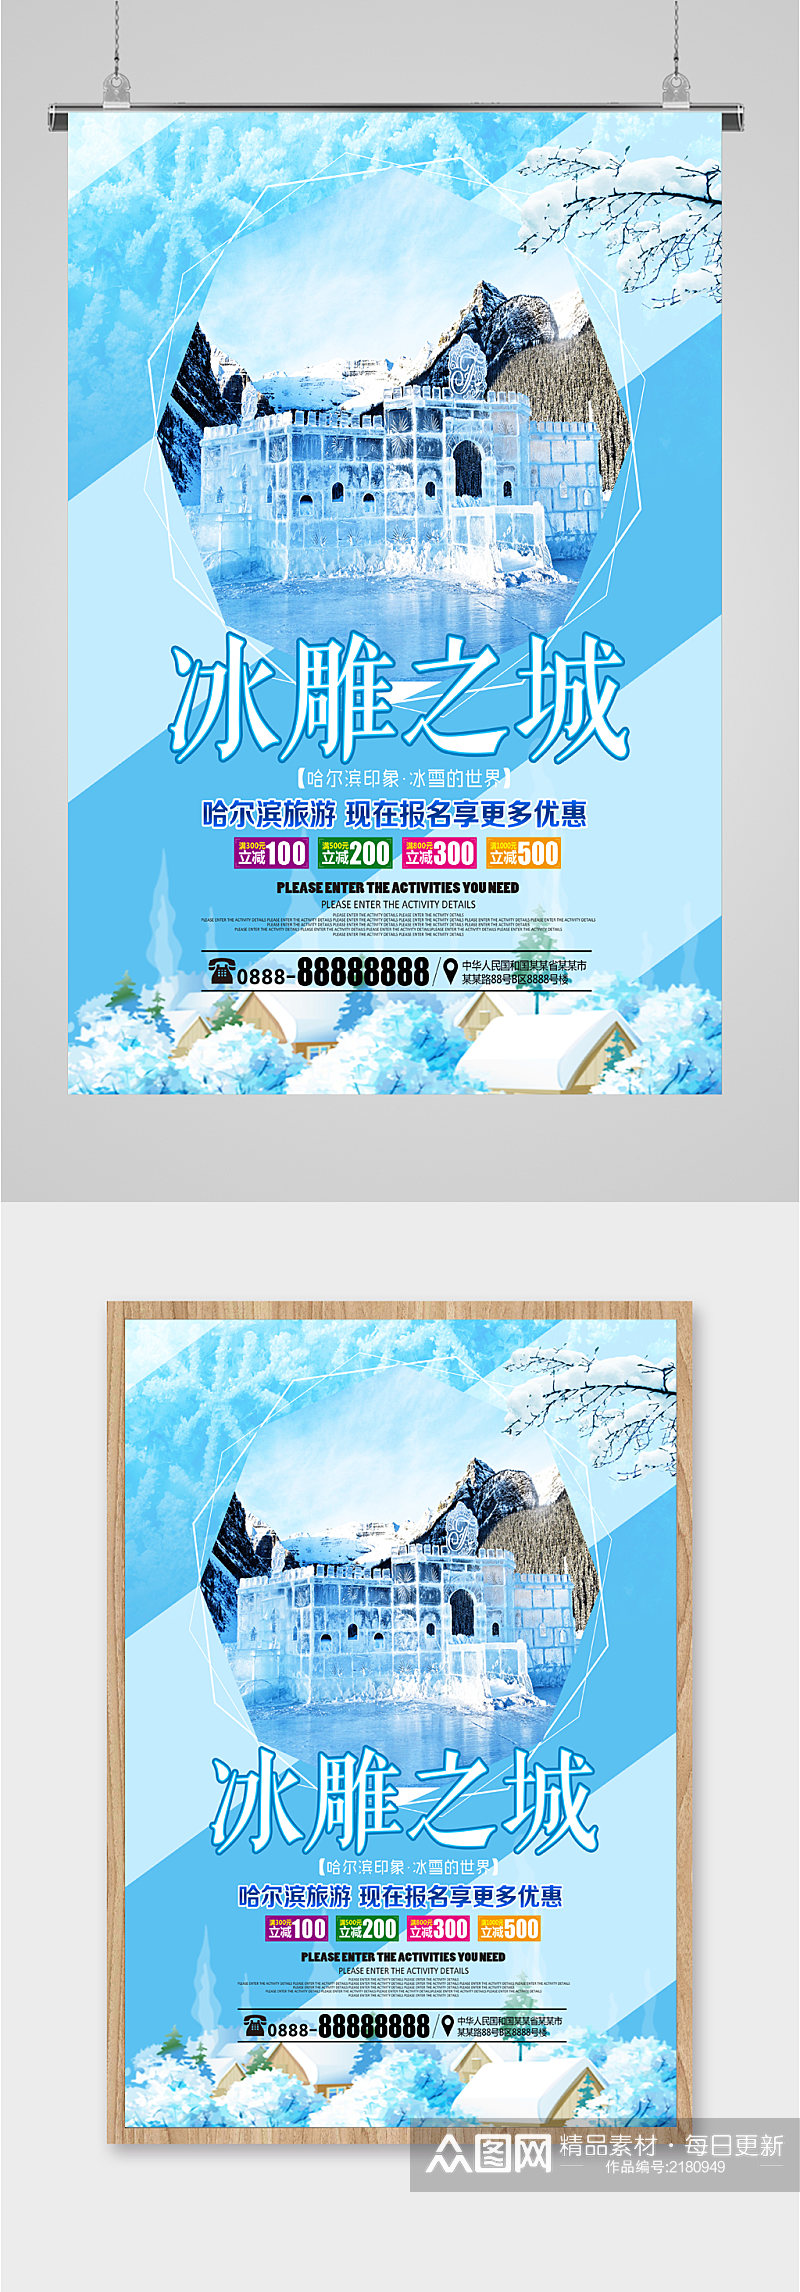 冰雕之城哈尔滨旅游海报素材